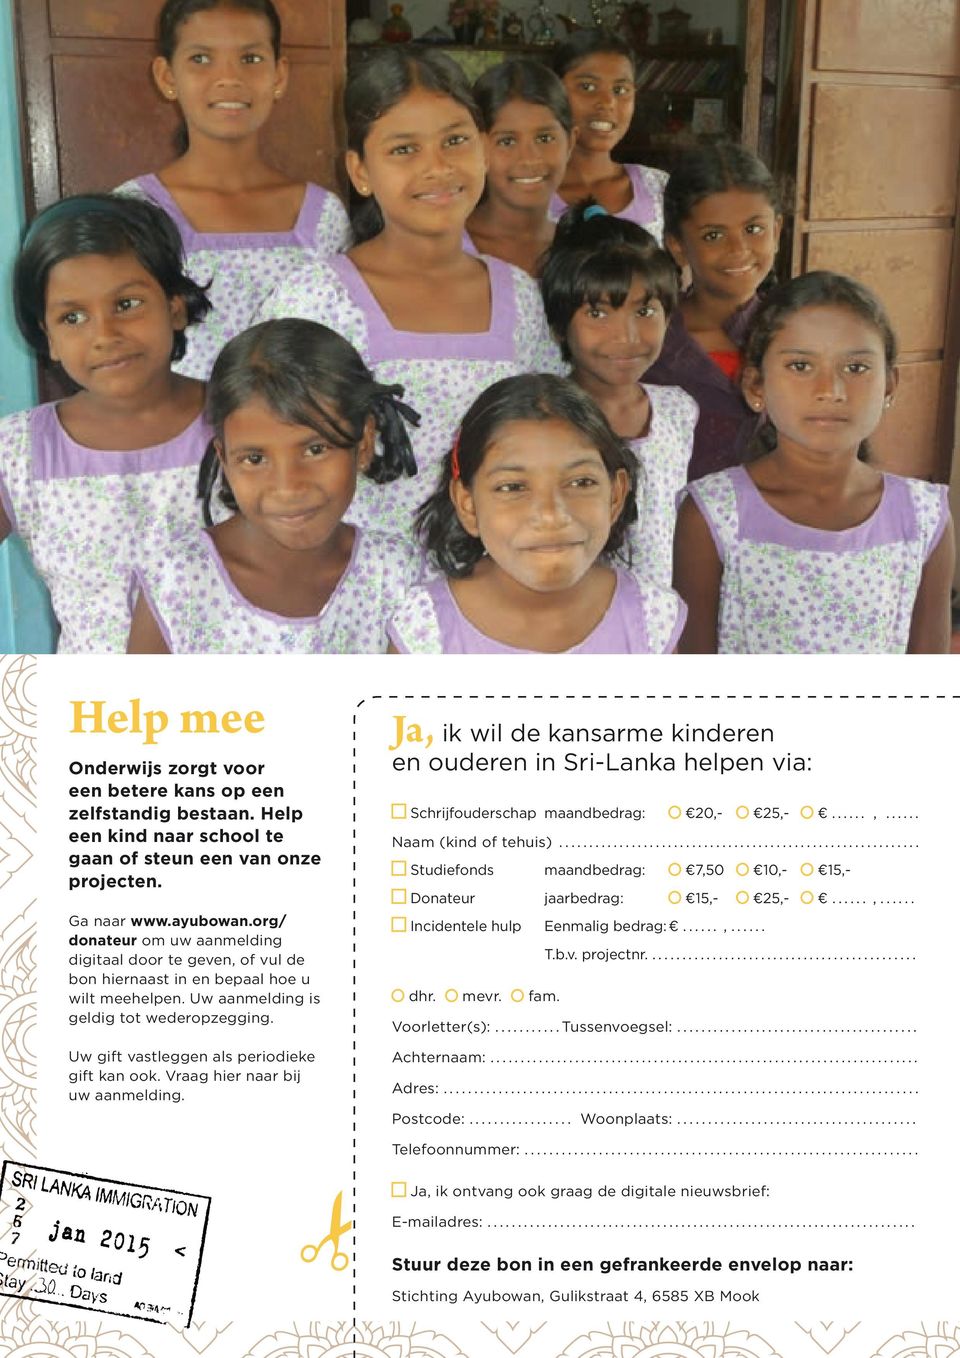 Vaag hie naa bij uw aanmelding. Ja, ik wil de kansame kindeen en oudeen in Si-Lanka helpen via: Schijfoudeschap maandbedag: 20,- 25,-...,... Naam (kind of tehuis).